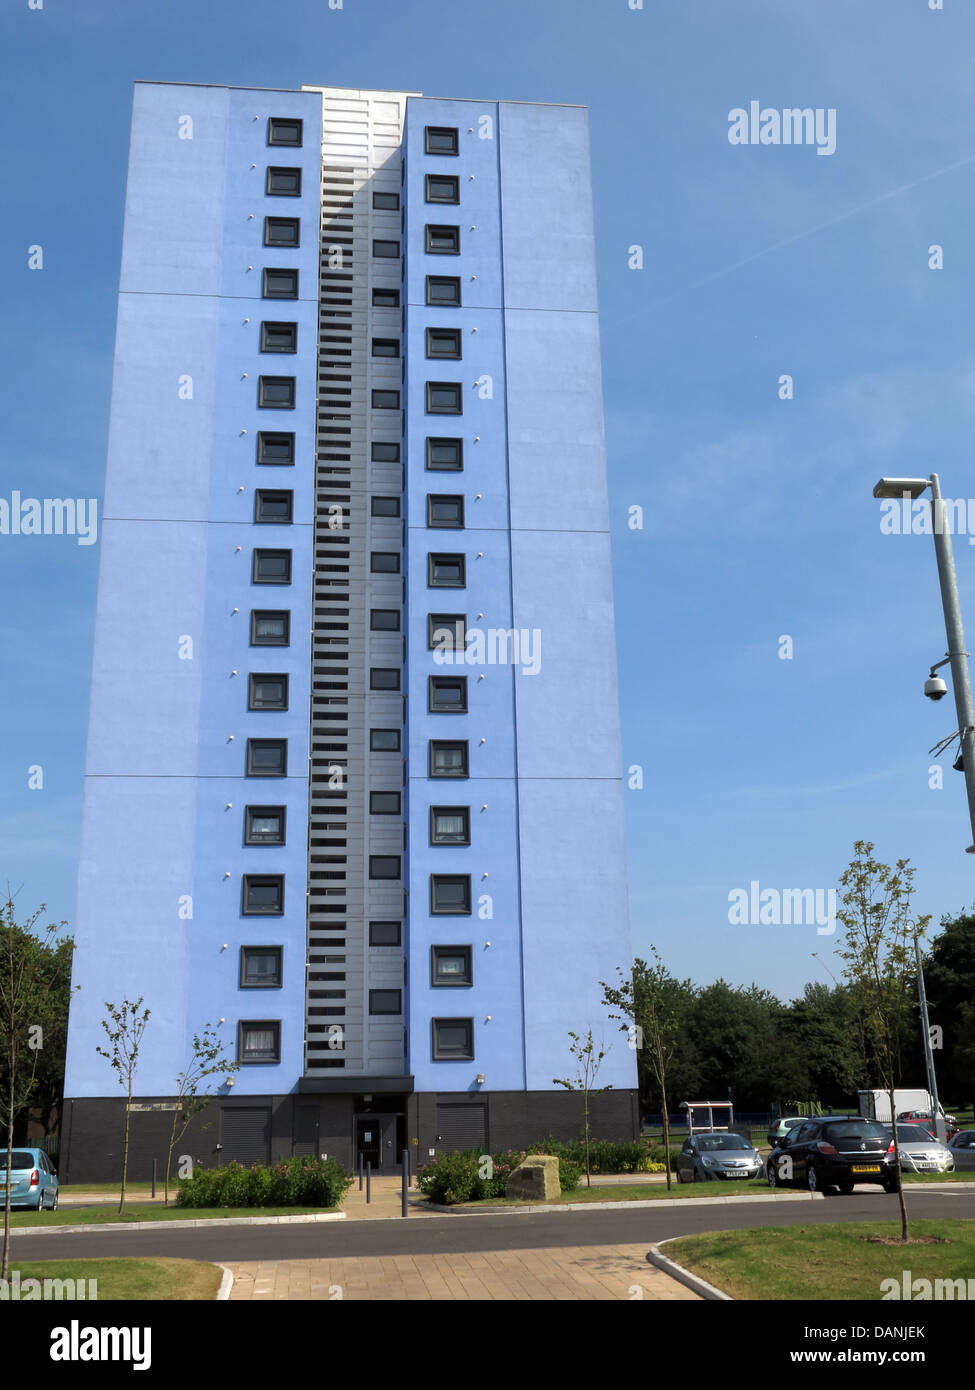 Grande ville résidentielle tower blocks West Midlands près de Wolverhampton England UK - peint en bleu et Teal Banque D'Images